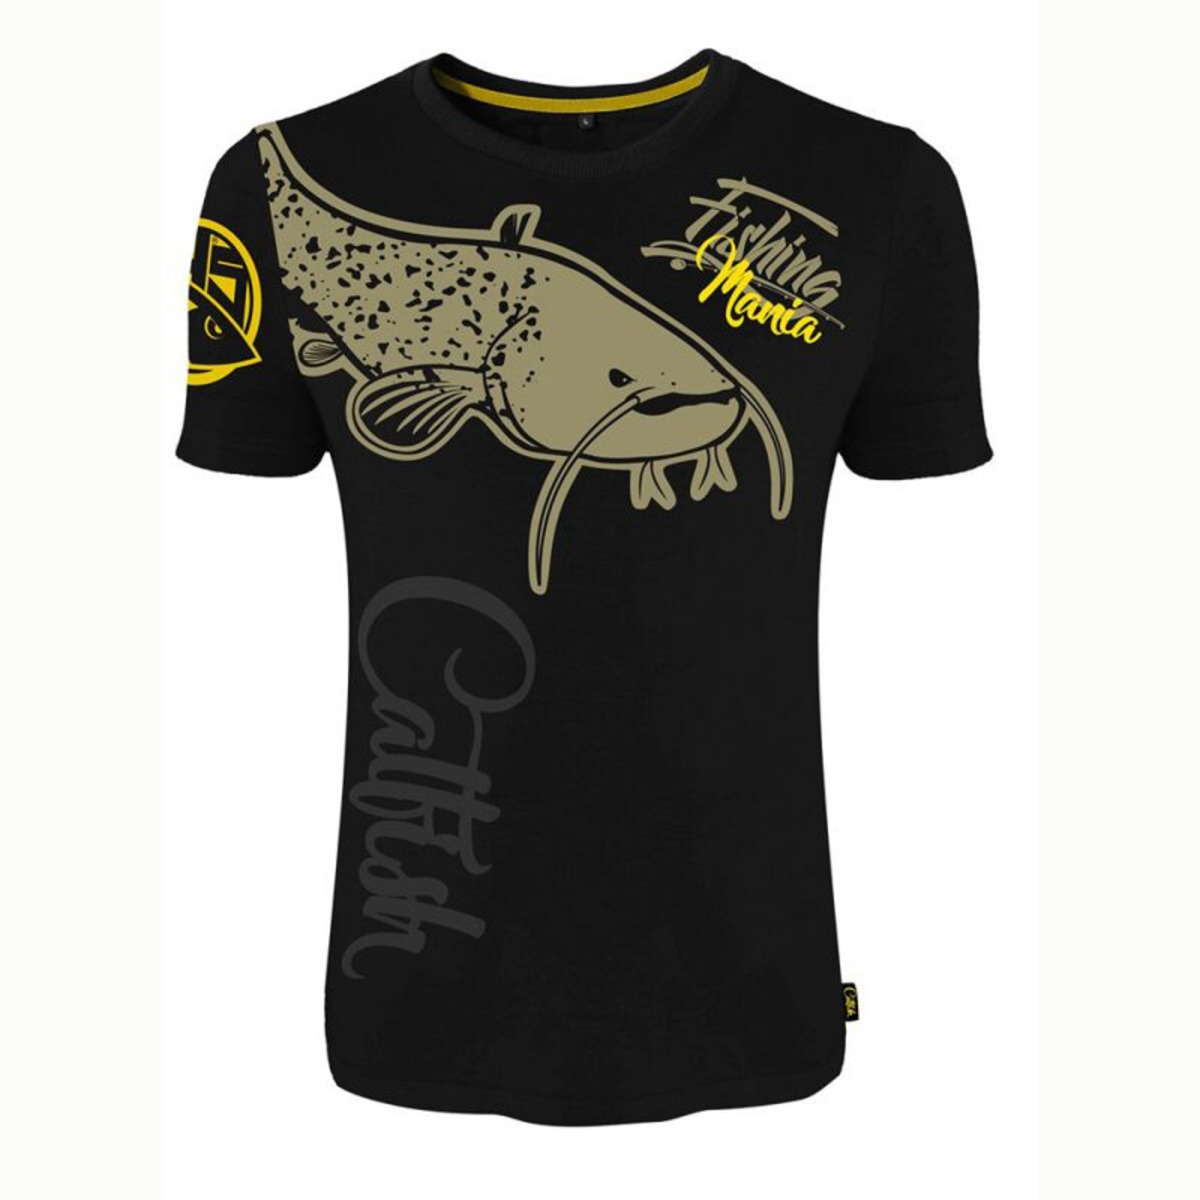 Hotspot Design T Shirt Fishing Mania CatFish - L